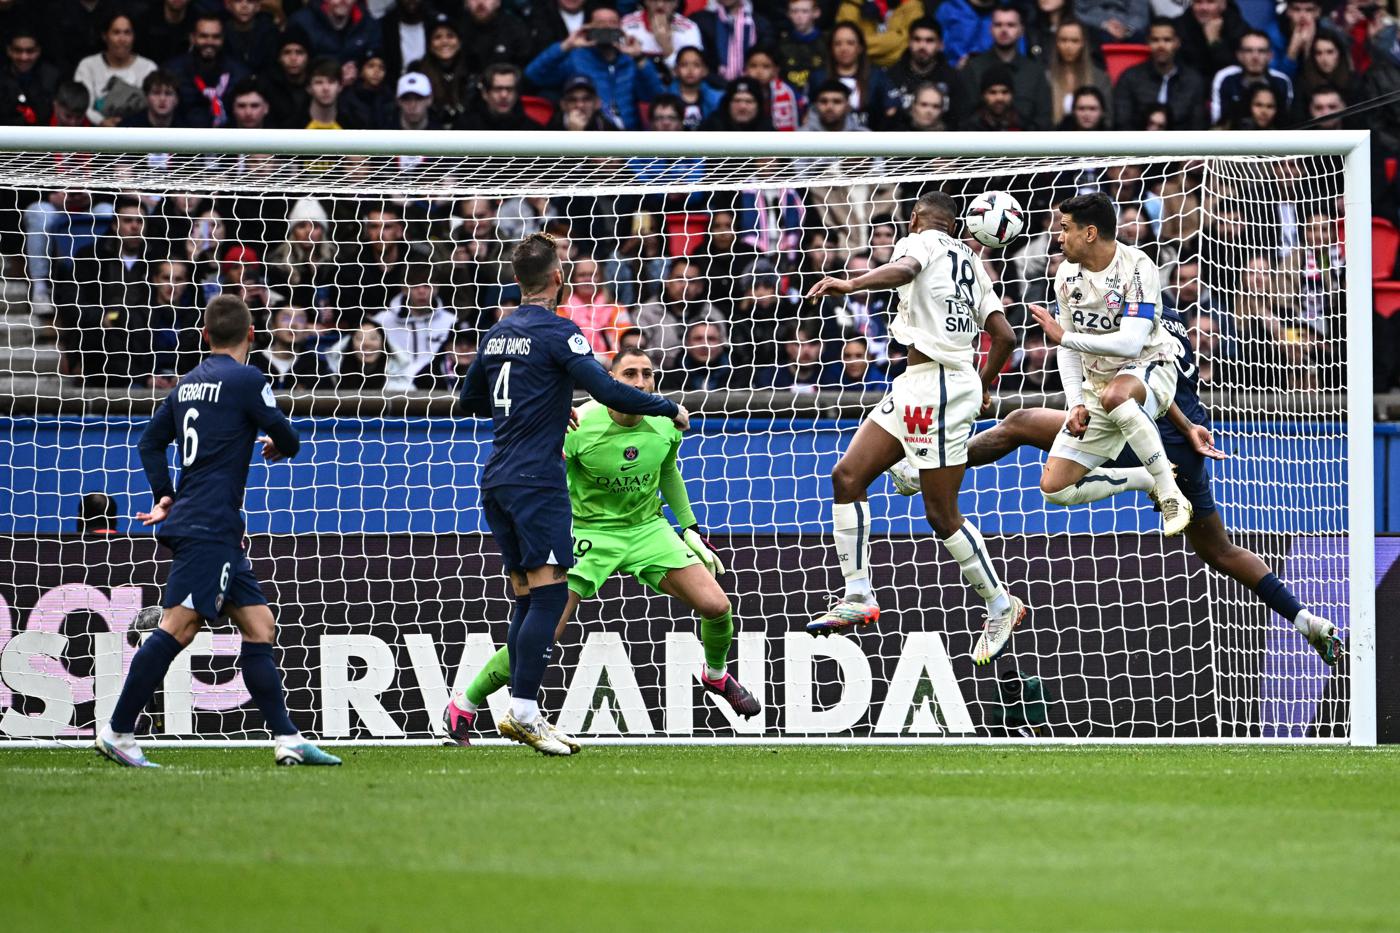 PSG - Lille - 4:3. Mistrzostwa Francji, 24. runda. Przegląd meczu, statystyki